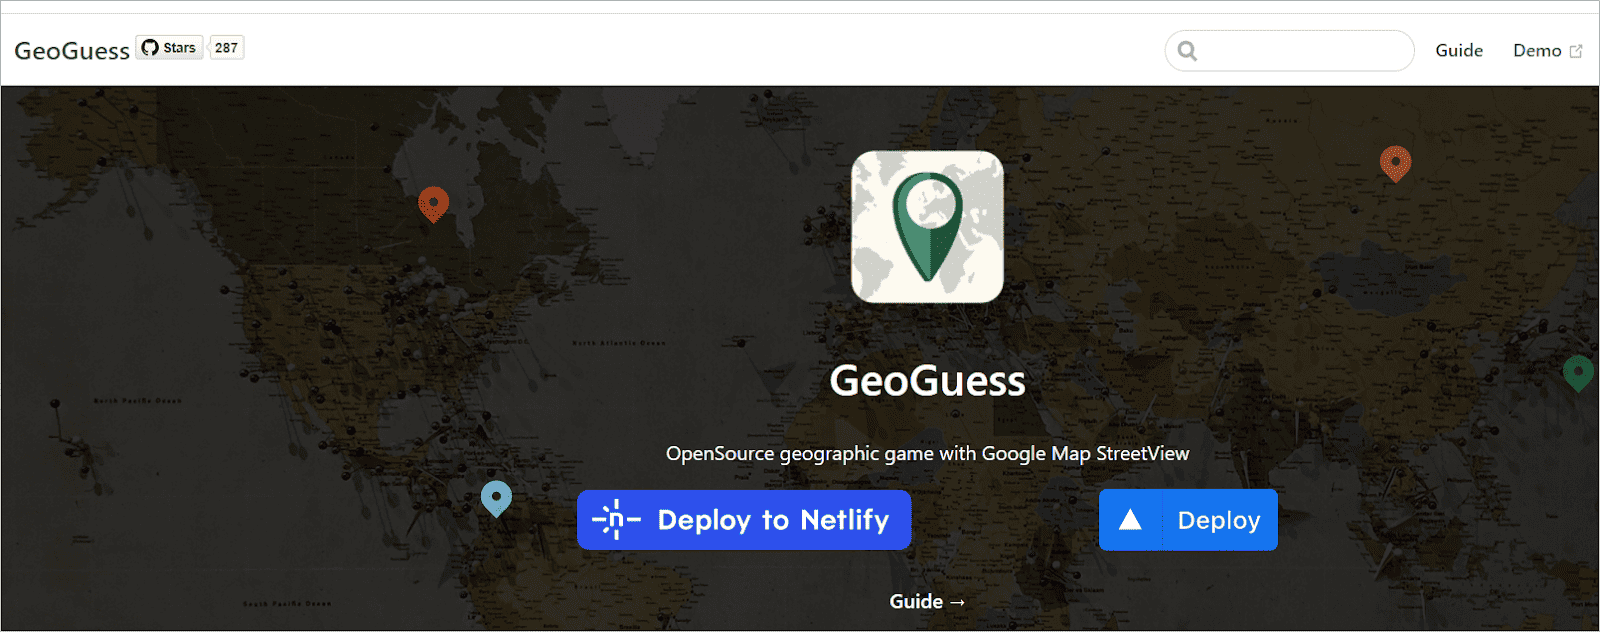 GeoGuess 